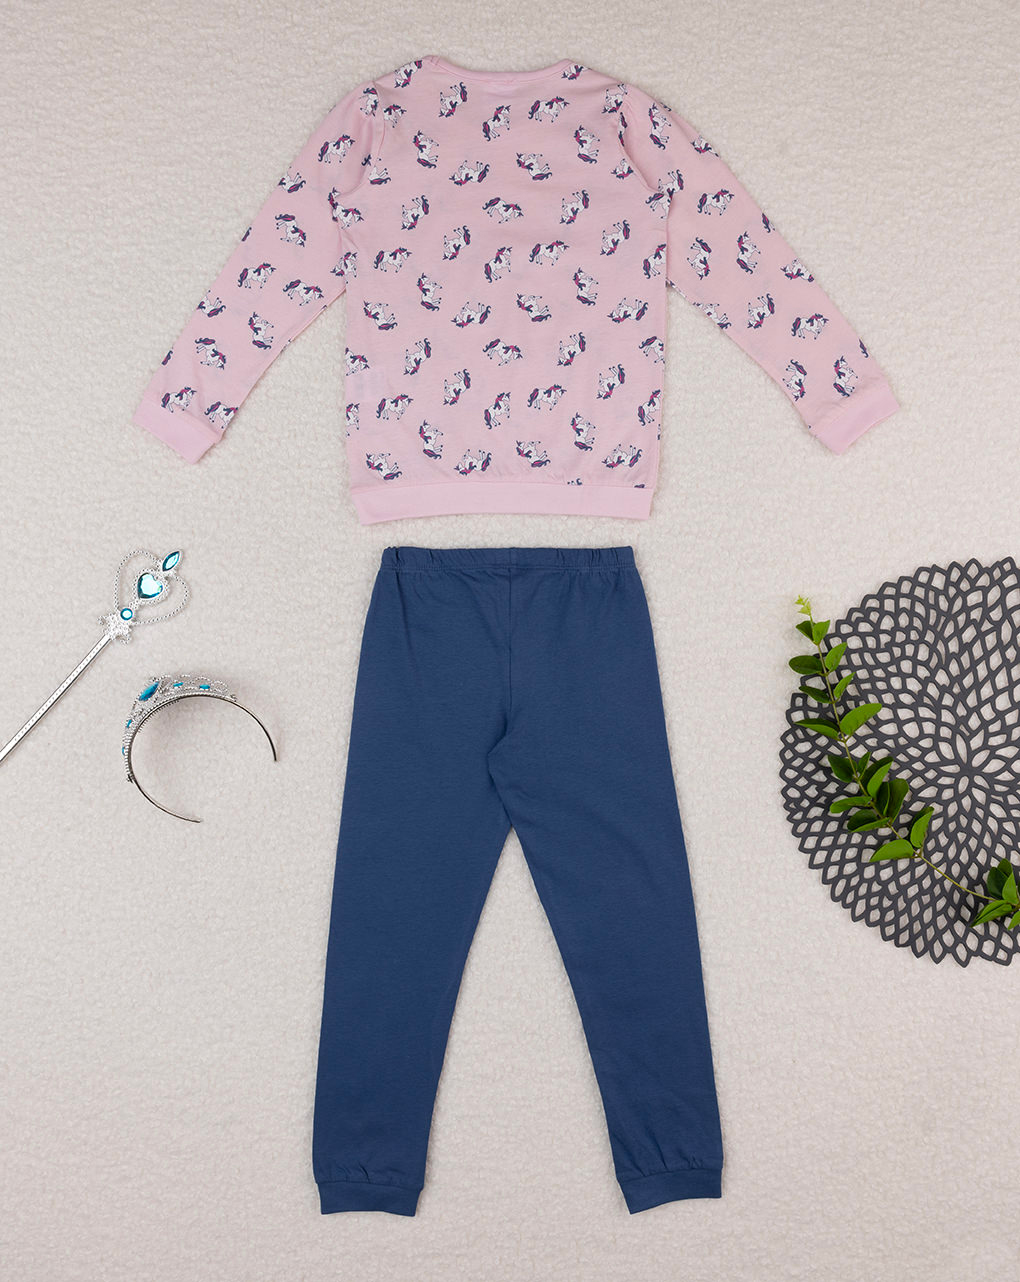 παιδική πιτζάμα ροζ/μπλε με μονόκερους για κορίτσι - Prénatal